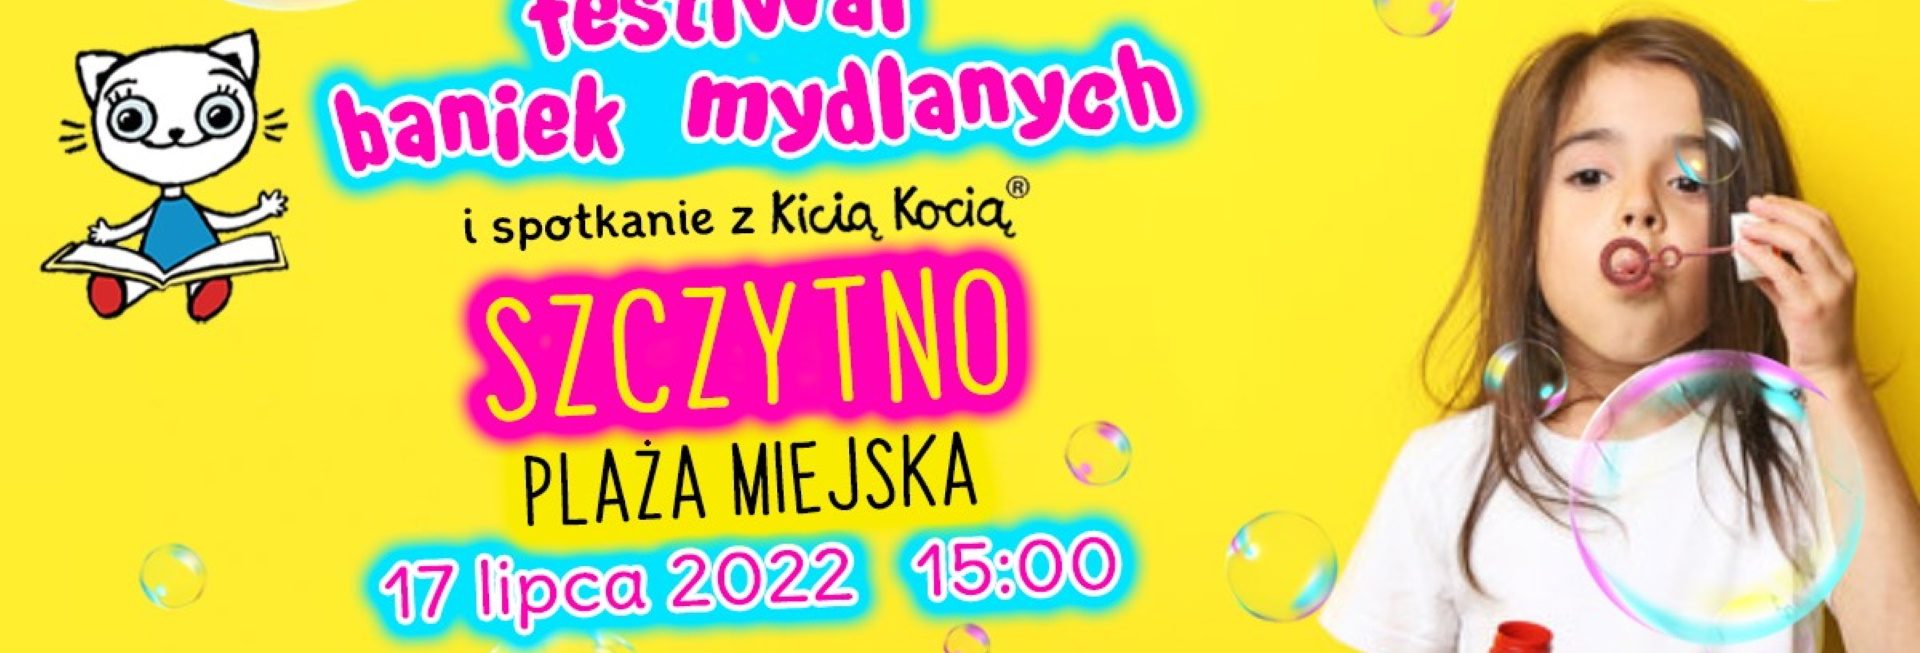 Plakat zapraszający do Szczytna na Festiwal Baniek Mydlanych z Kicią Kocią w Szczytnie 2022.  